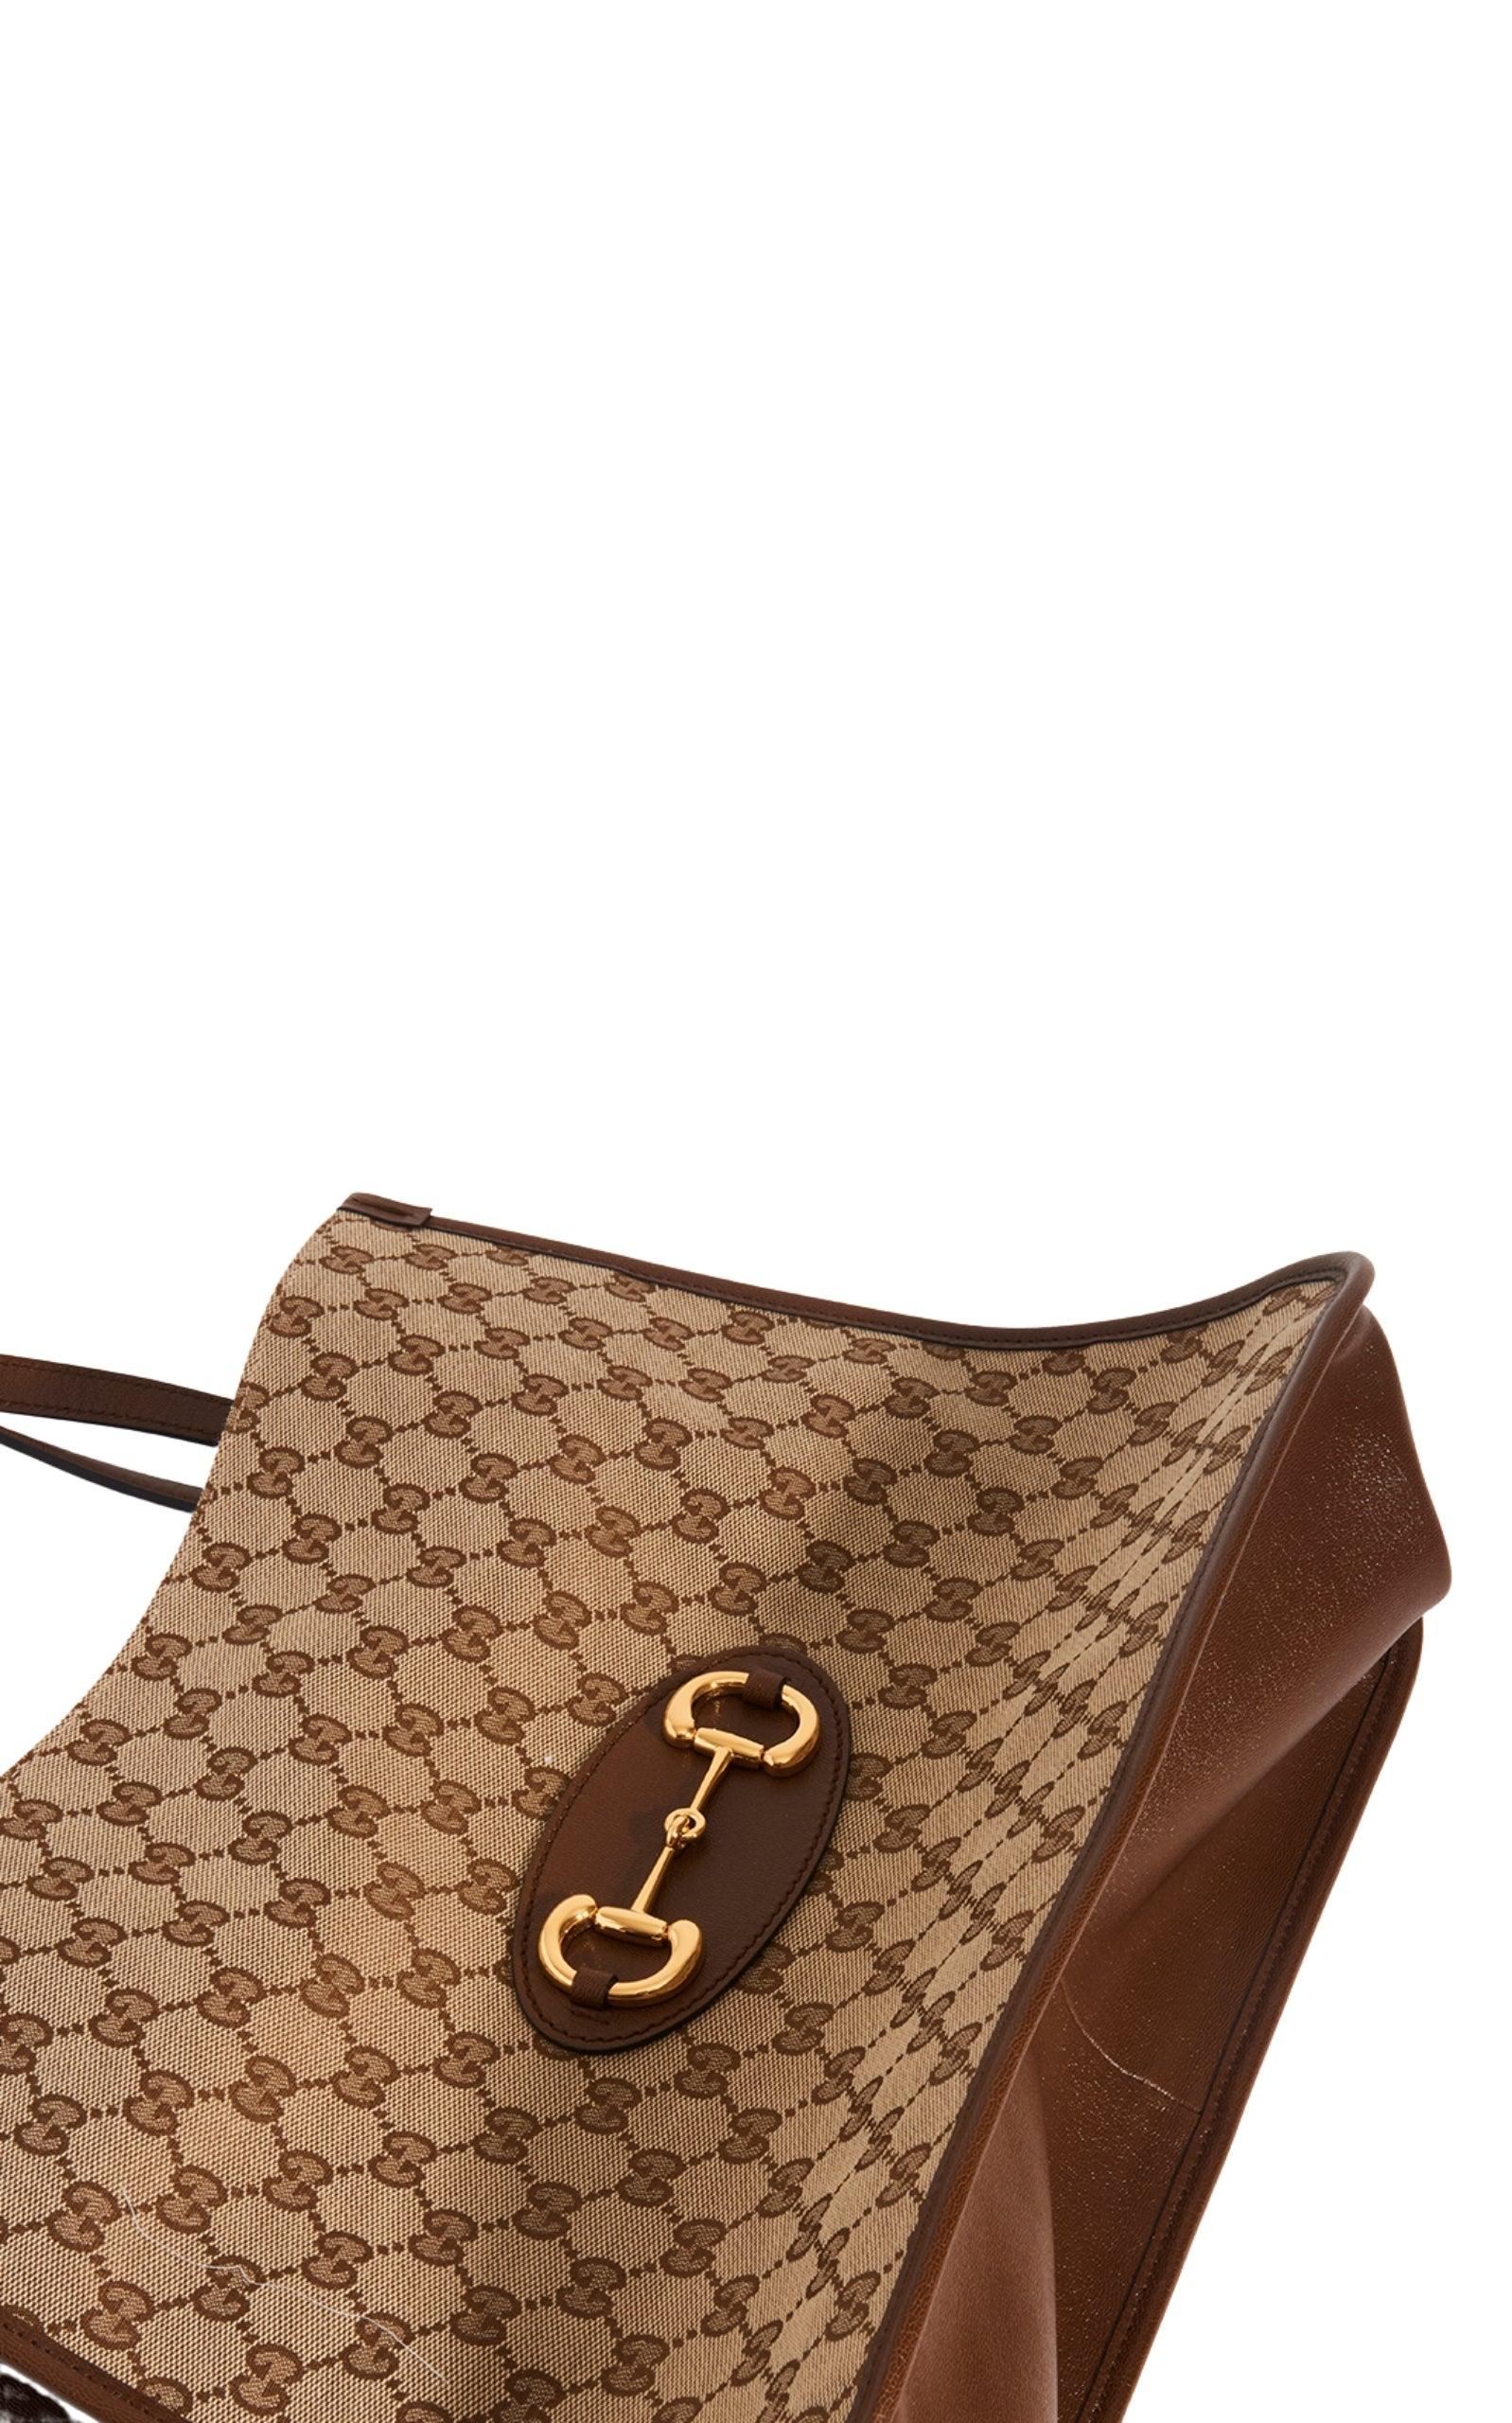 Horsebit 1955 cloth handbag Gucci Black in Fabric - 25838519